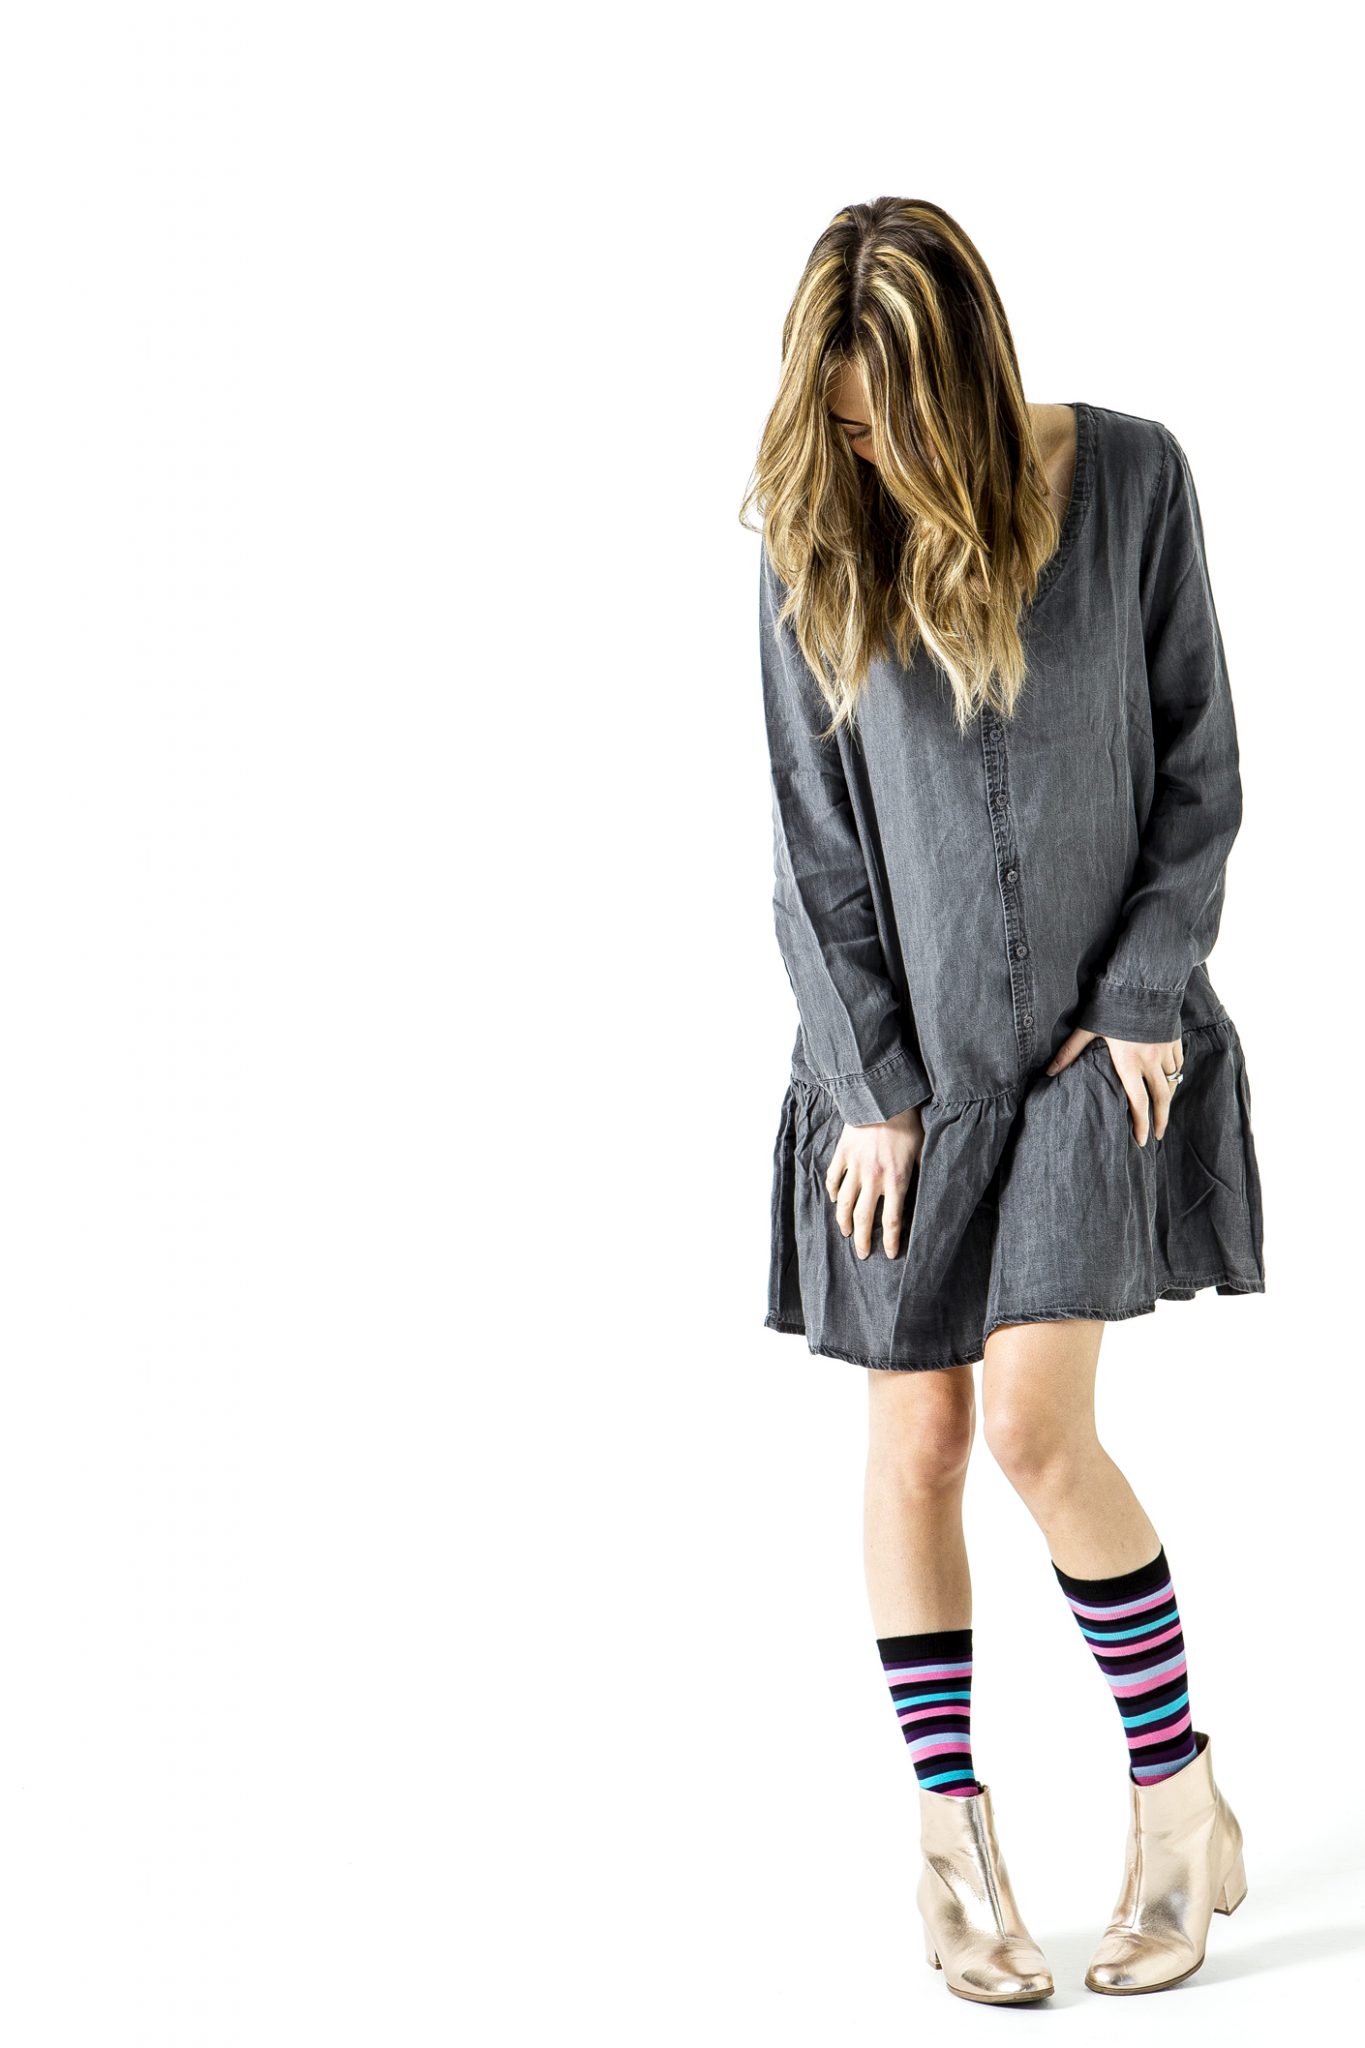 womenswear-fashion-photography-for-socks-shot-in-manchester